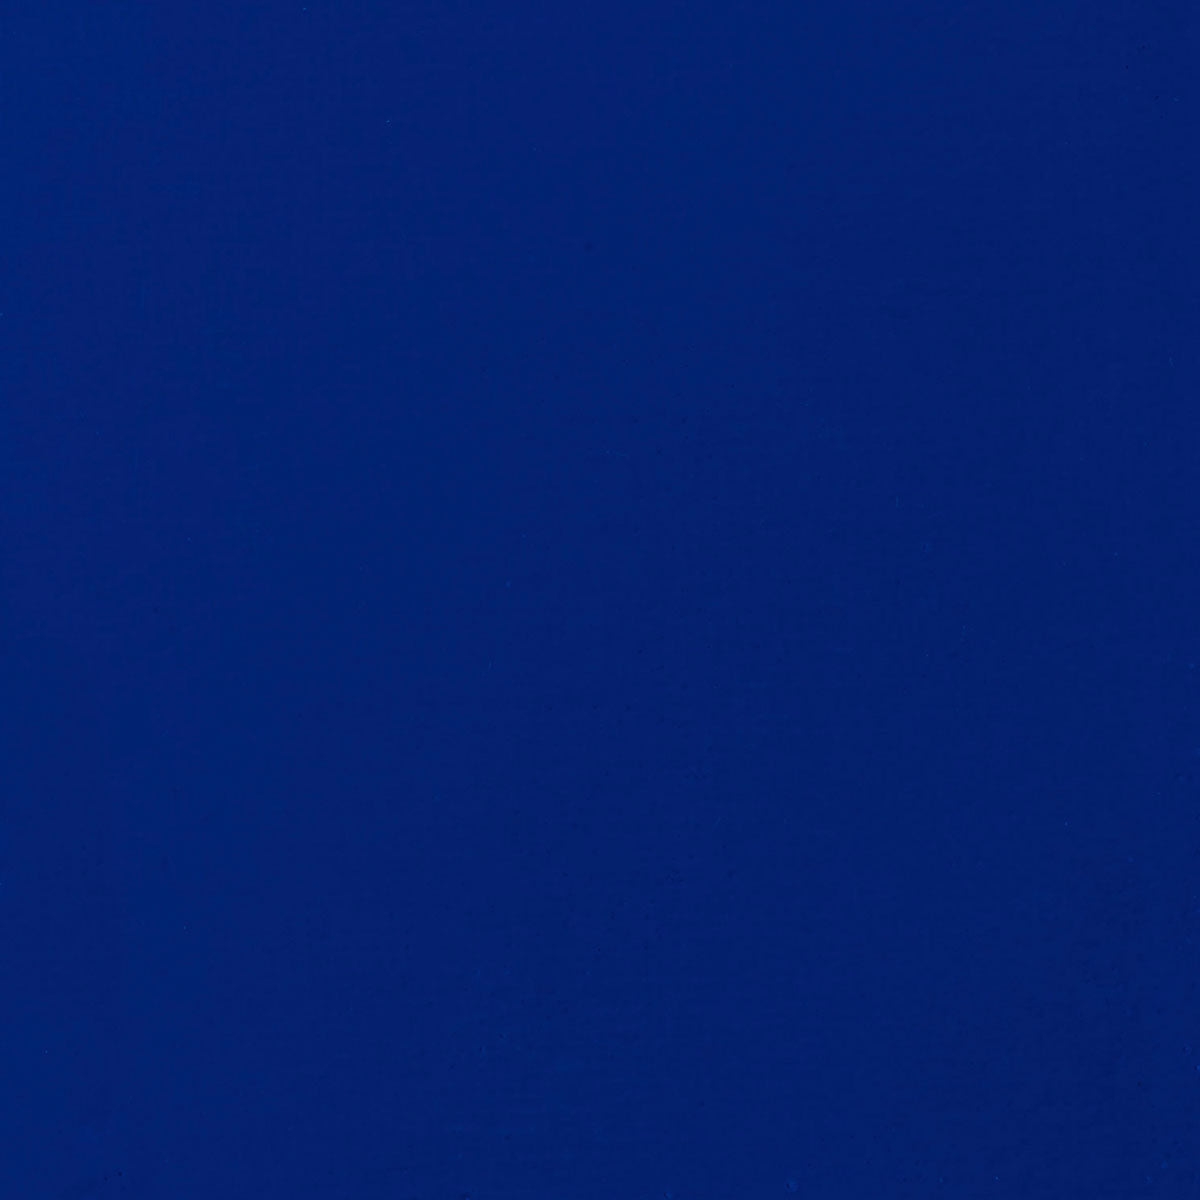 Liquitex - Guazzo Acrilico 59ml S1 - Blu Oltremare Tonalità Rosso